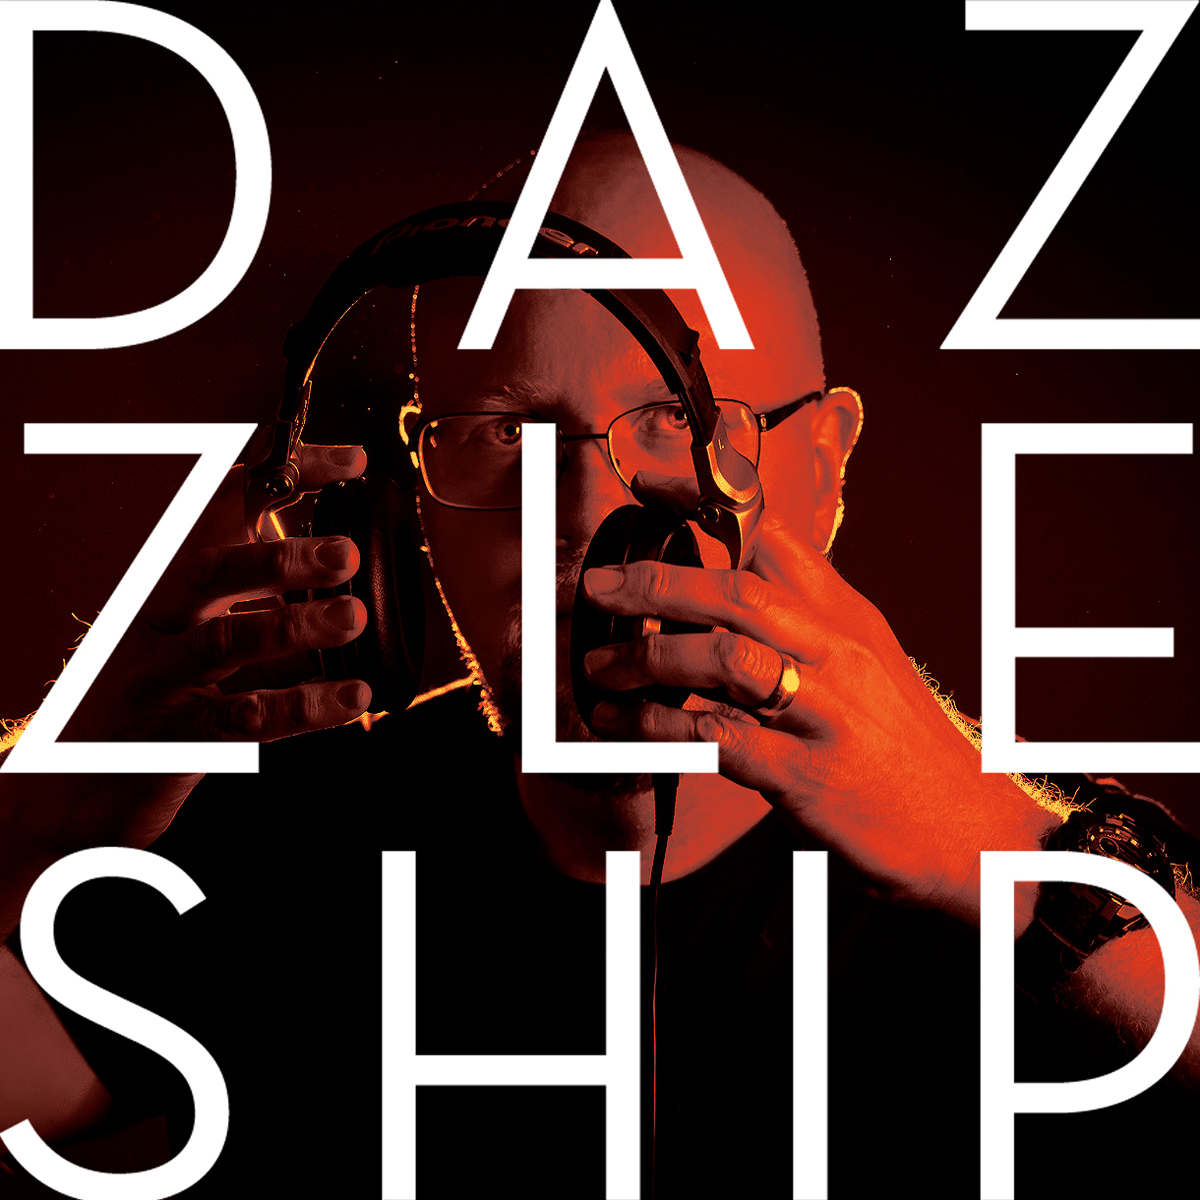 DJ Dazzleship Promo Image